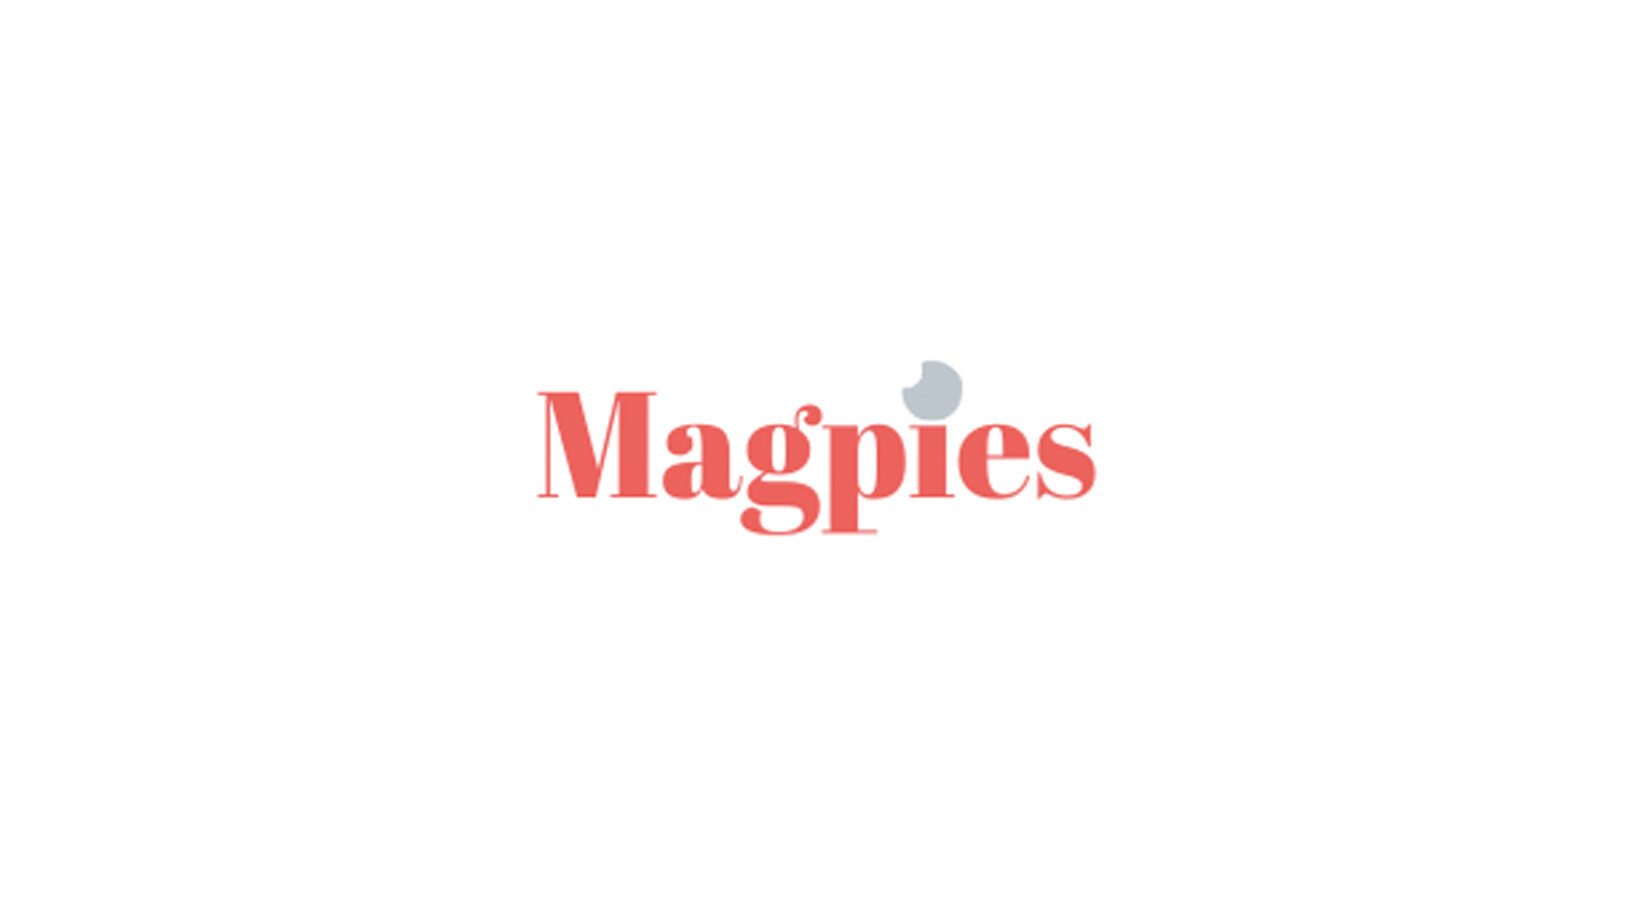 magpies_logo.jpg